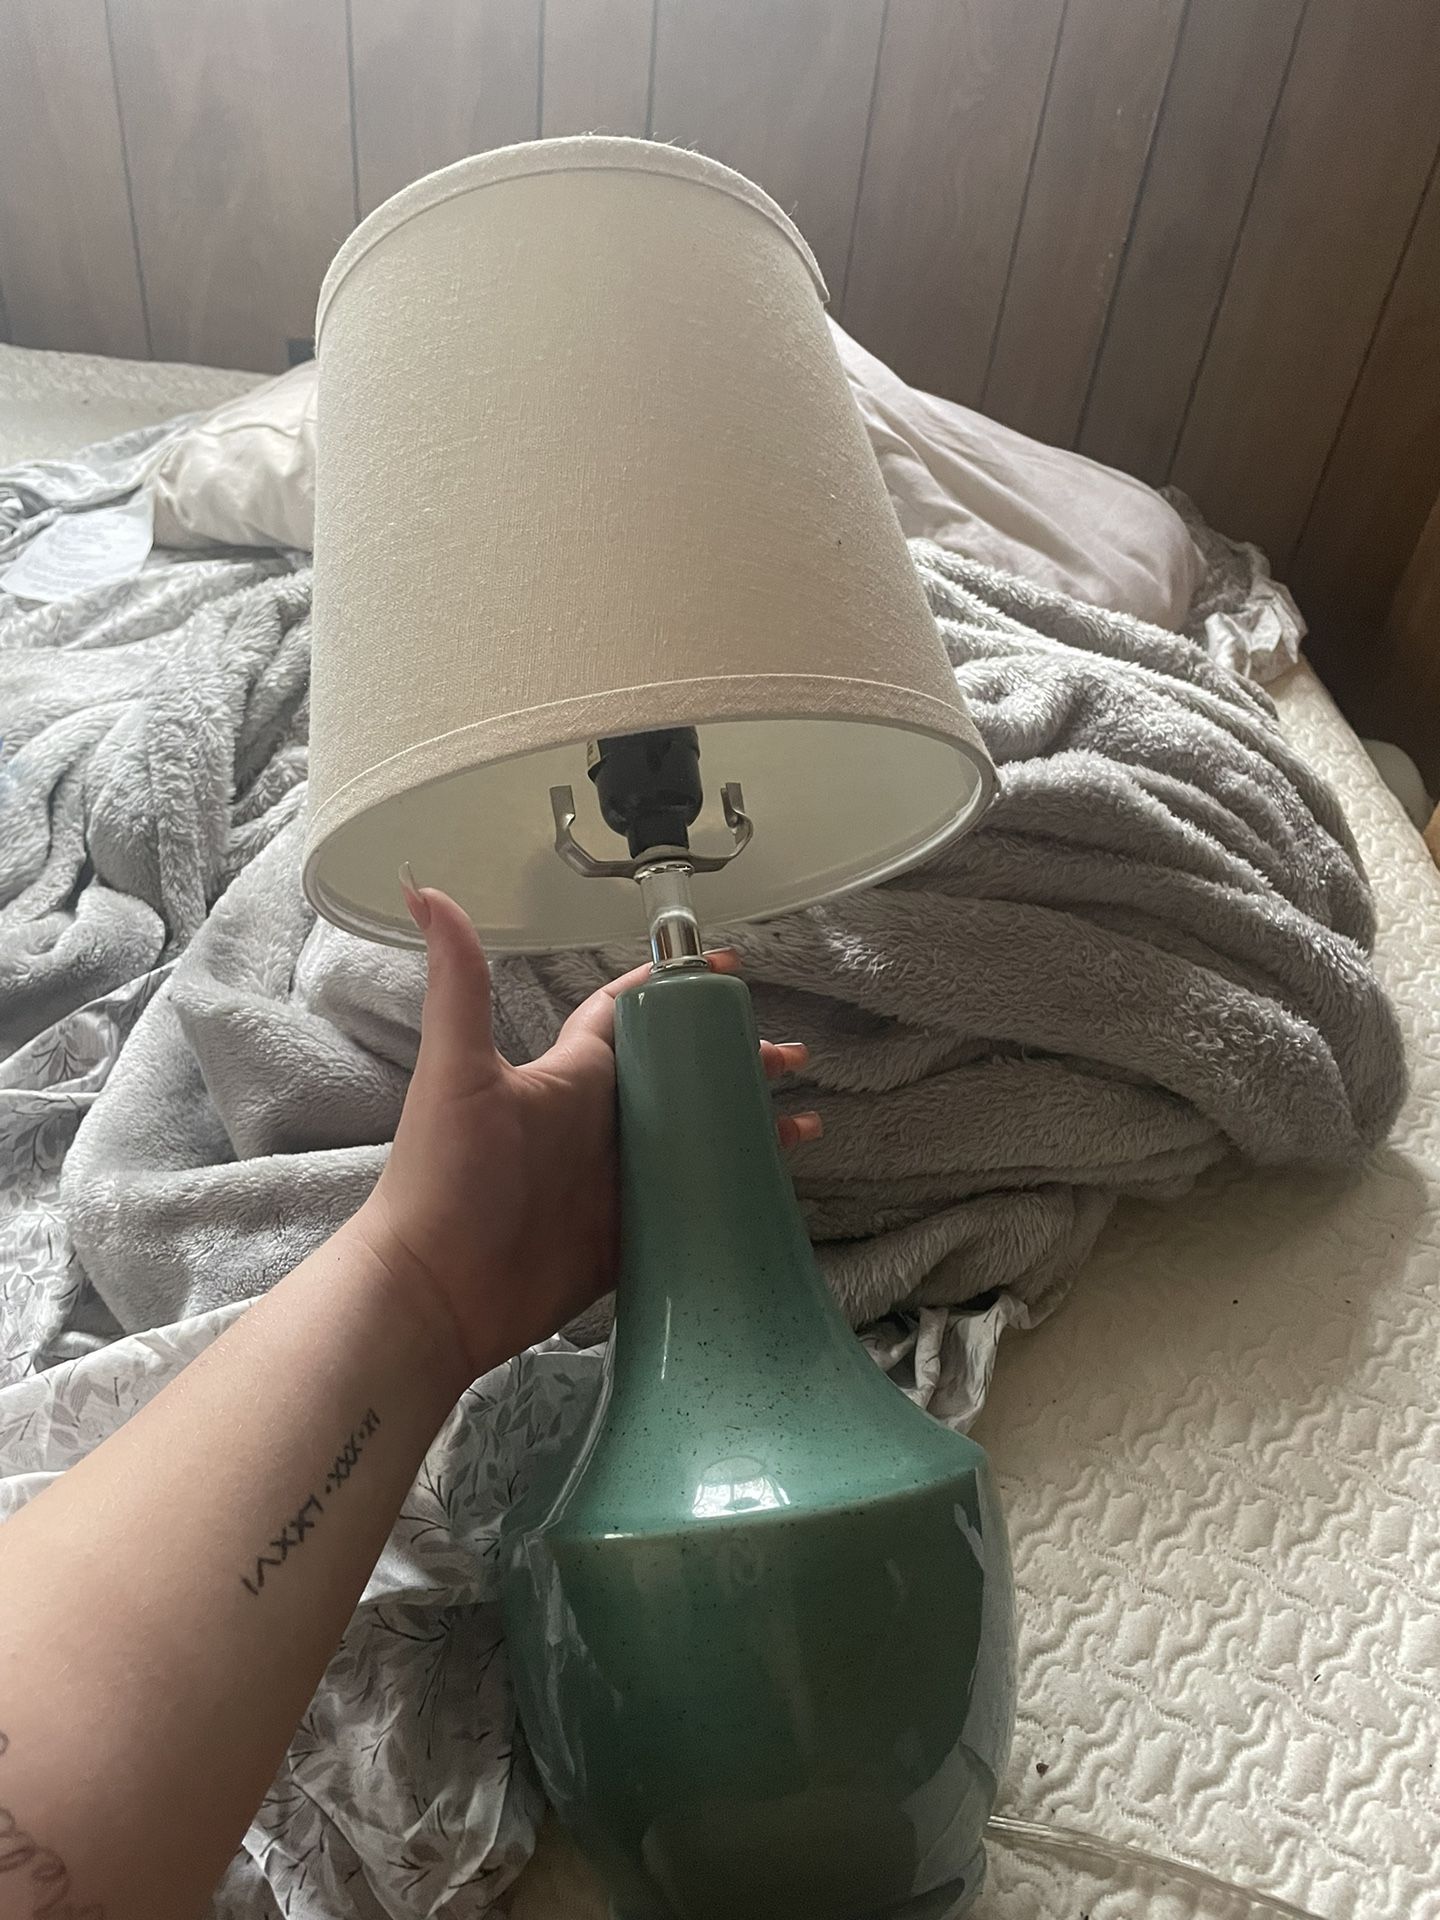 Lamp 